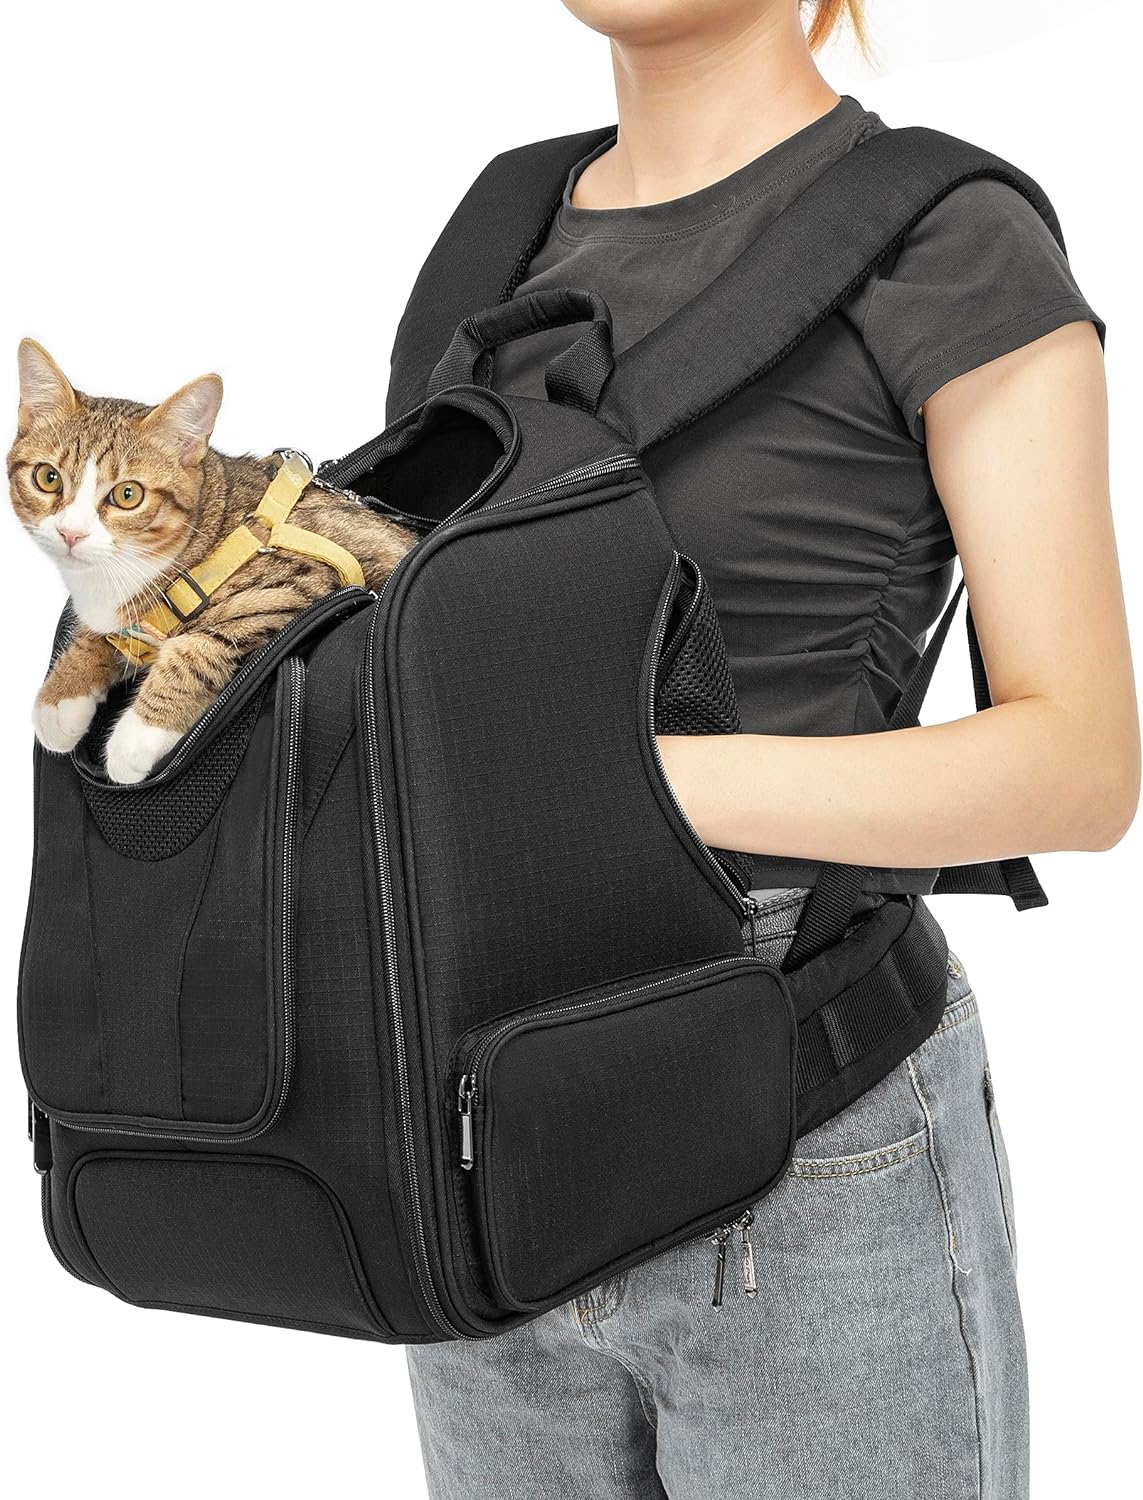 Mochila transportadora para mascotas, mochila transportadora para gatos